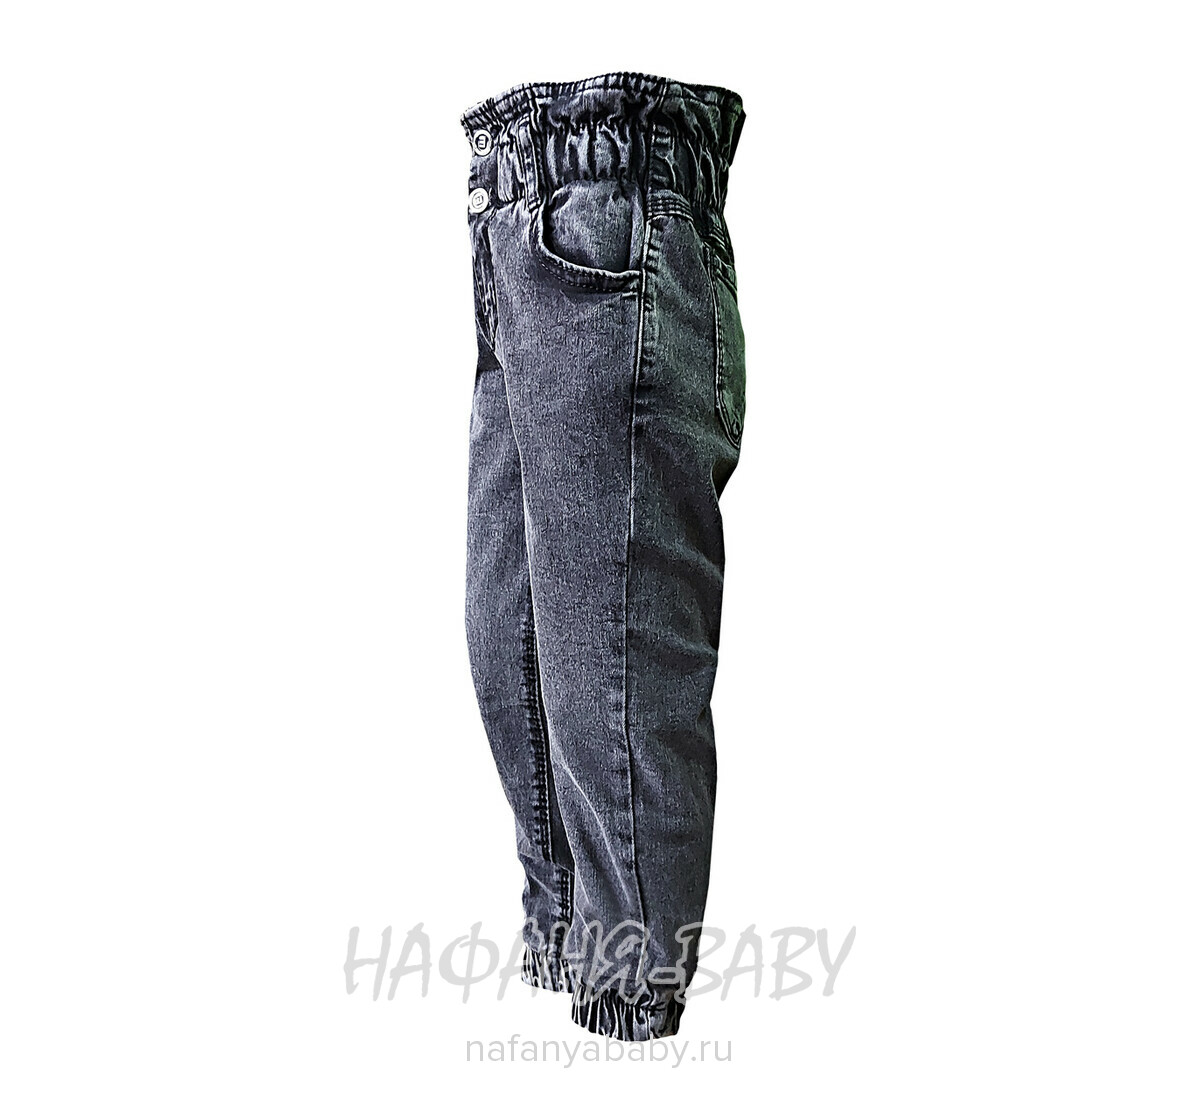 Детские джинсы ELEYSA Jeans арт: 6105, 3-7 лет, цвет черный, оптом Турция